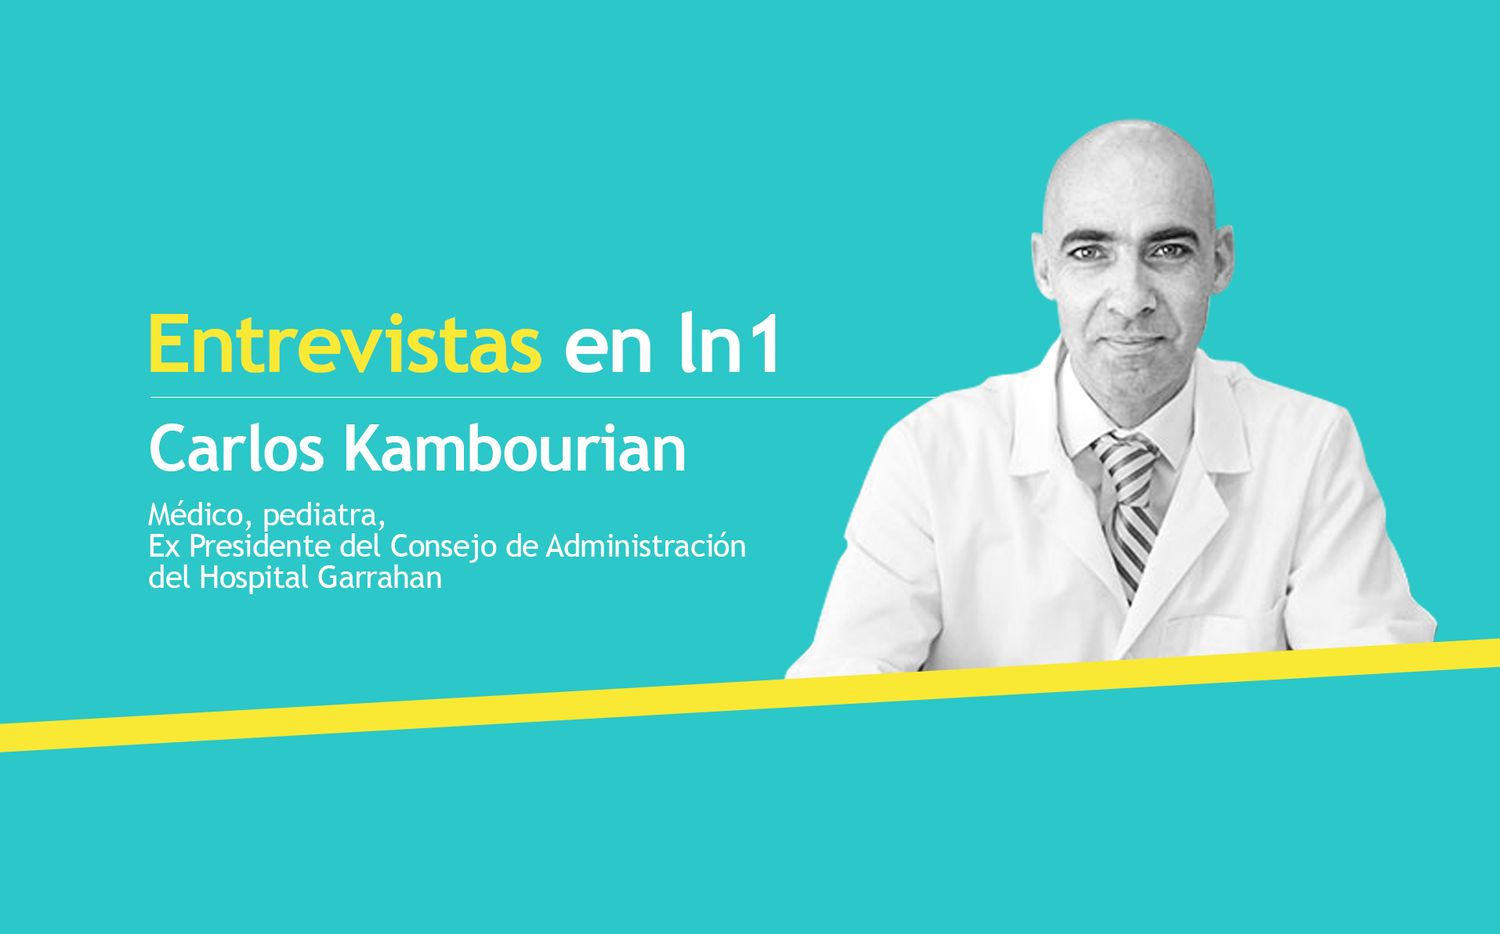 Coronavirus: "El objetivo del barbijo no es evitar contagiarme, sino que es para no contagiar a otro", explicó el médico Kambourian